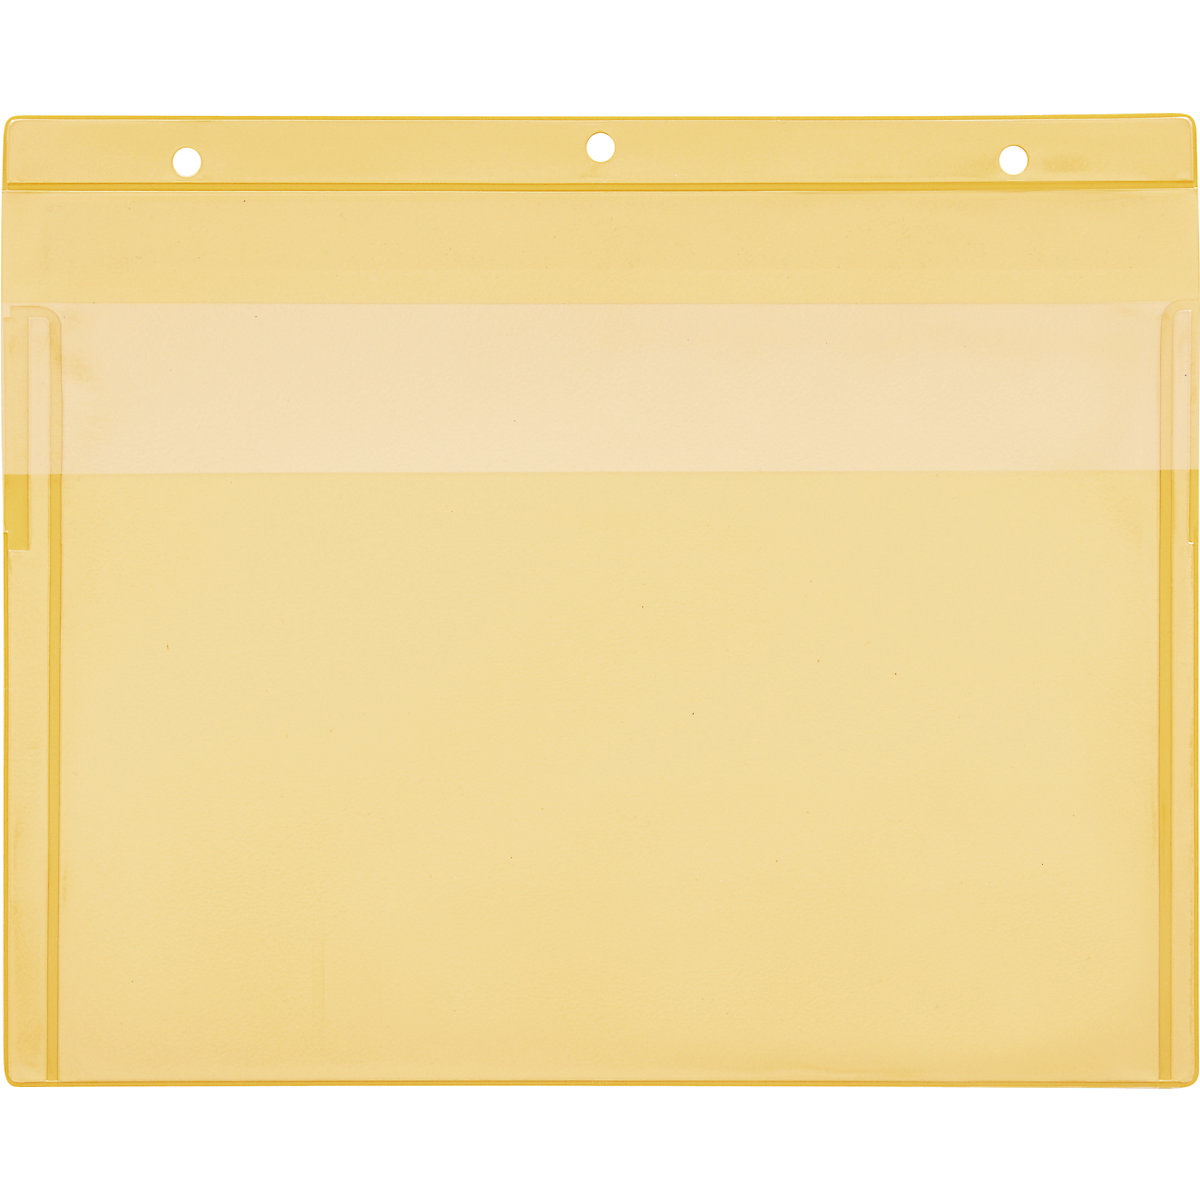 Porte-documents avec trous d'accrochage, format horizontal A4, avec cache de protection, jaune, lot de 50